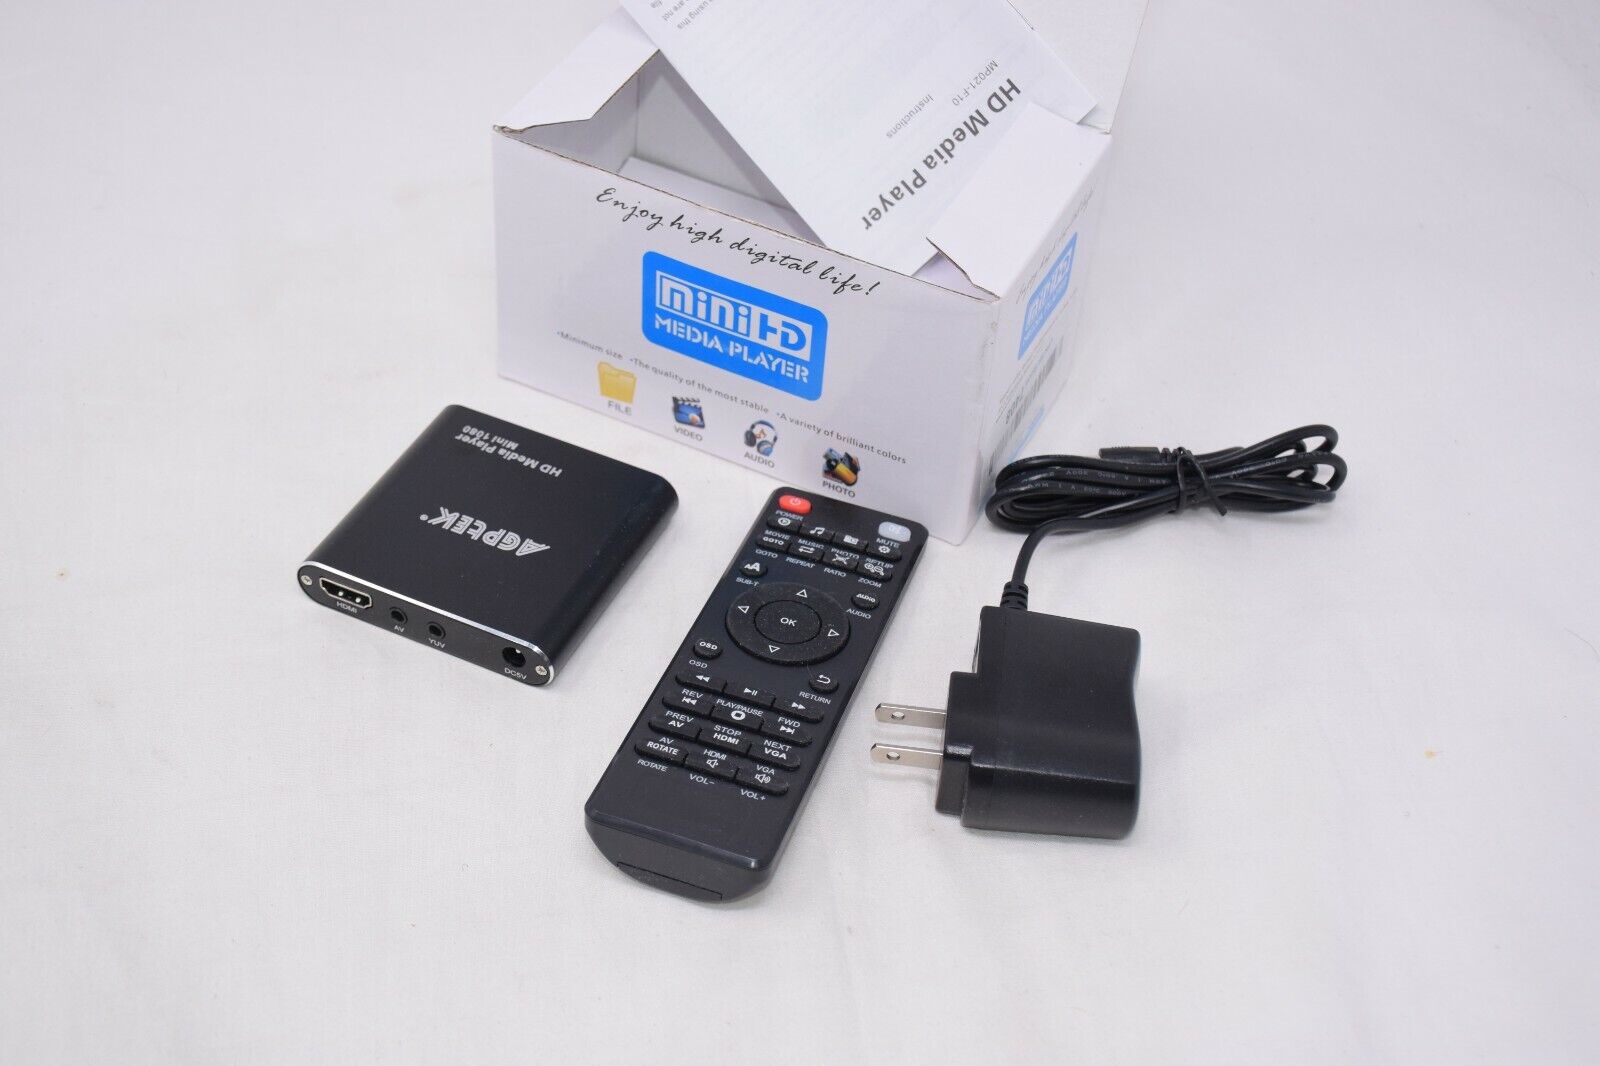 AGPTEK MP021-F10 USB Port Mini HD 1080P Portable Media Player w/ remote